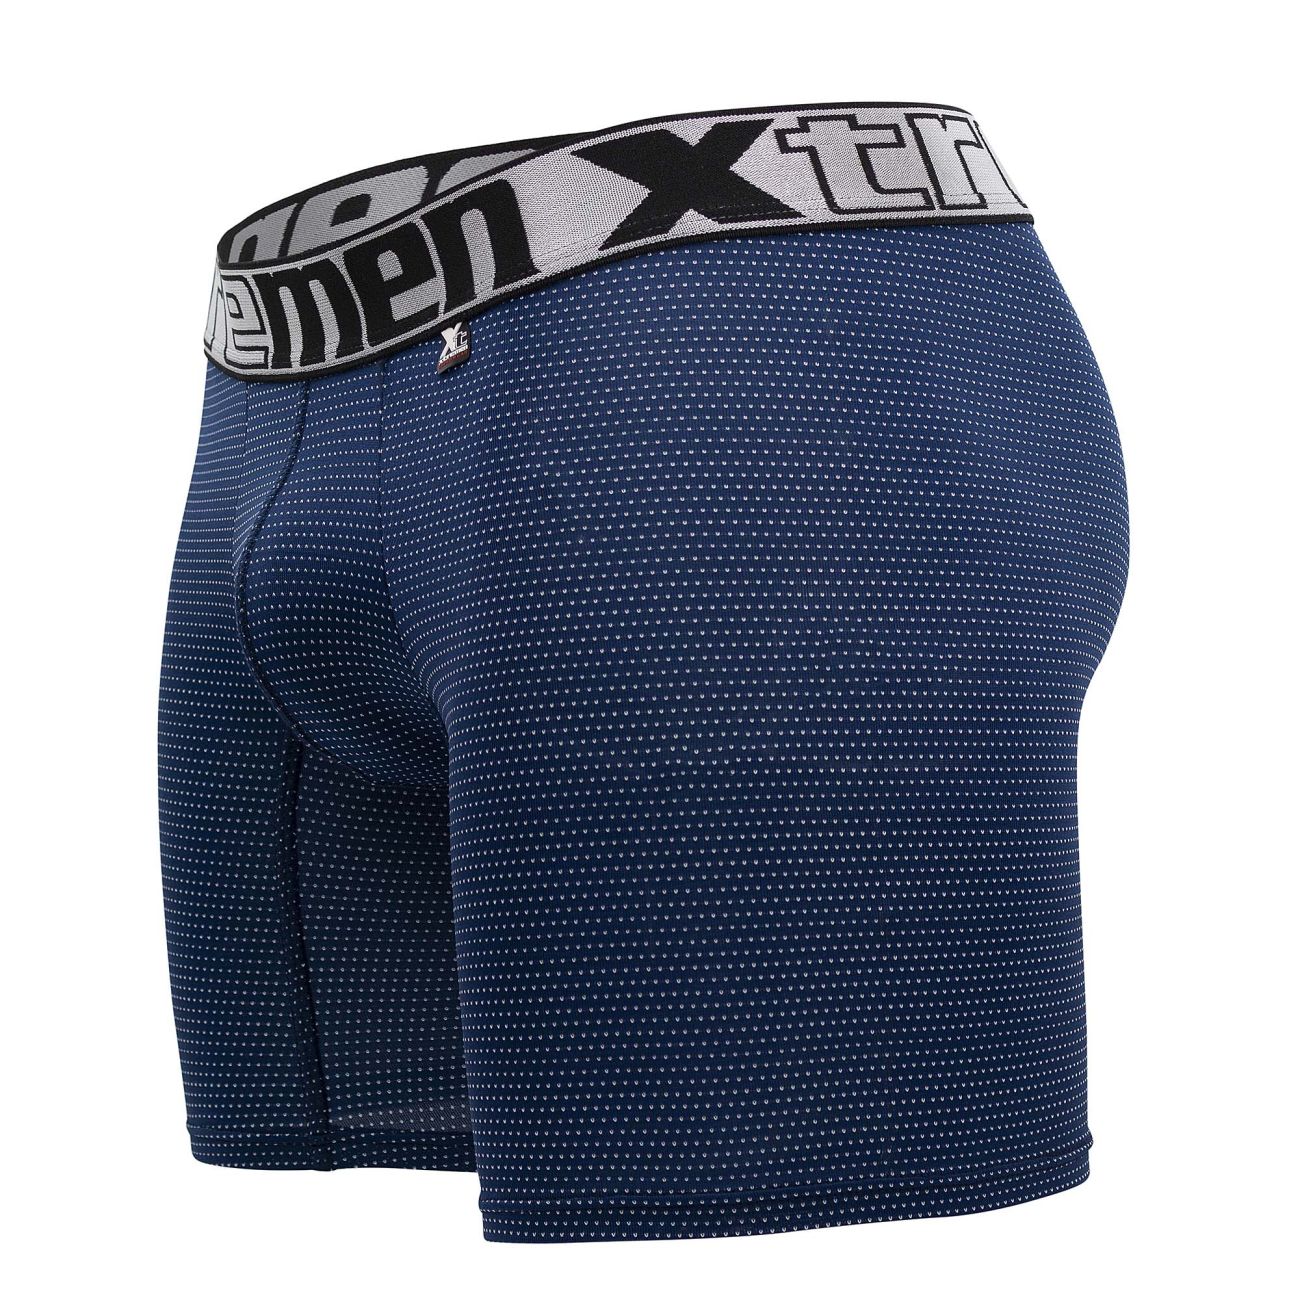 Xtremen Plus Size Boxer Briefs